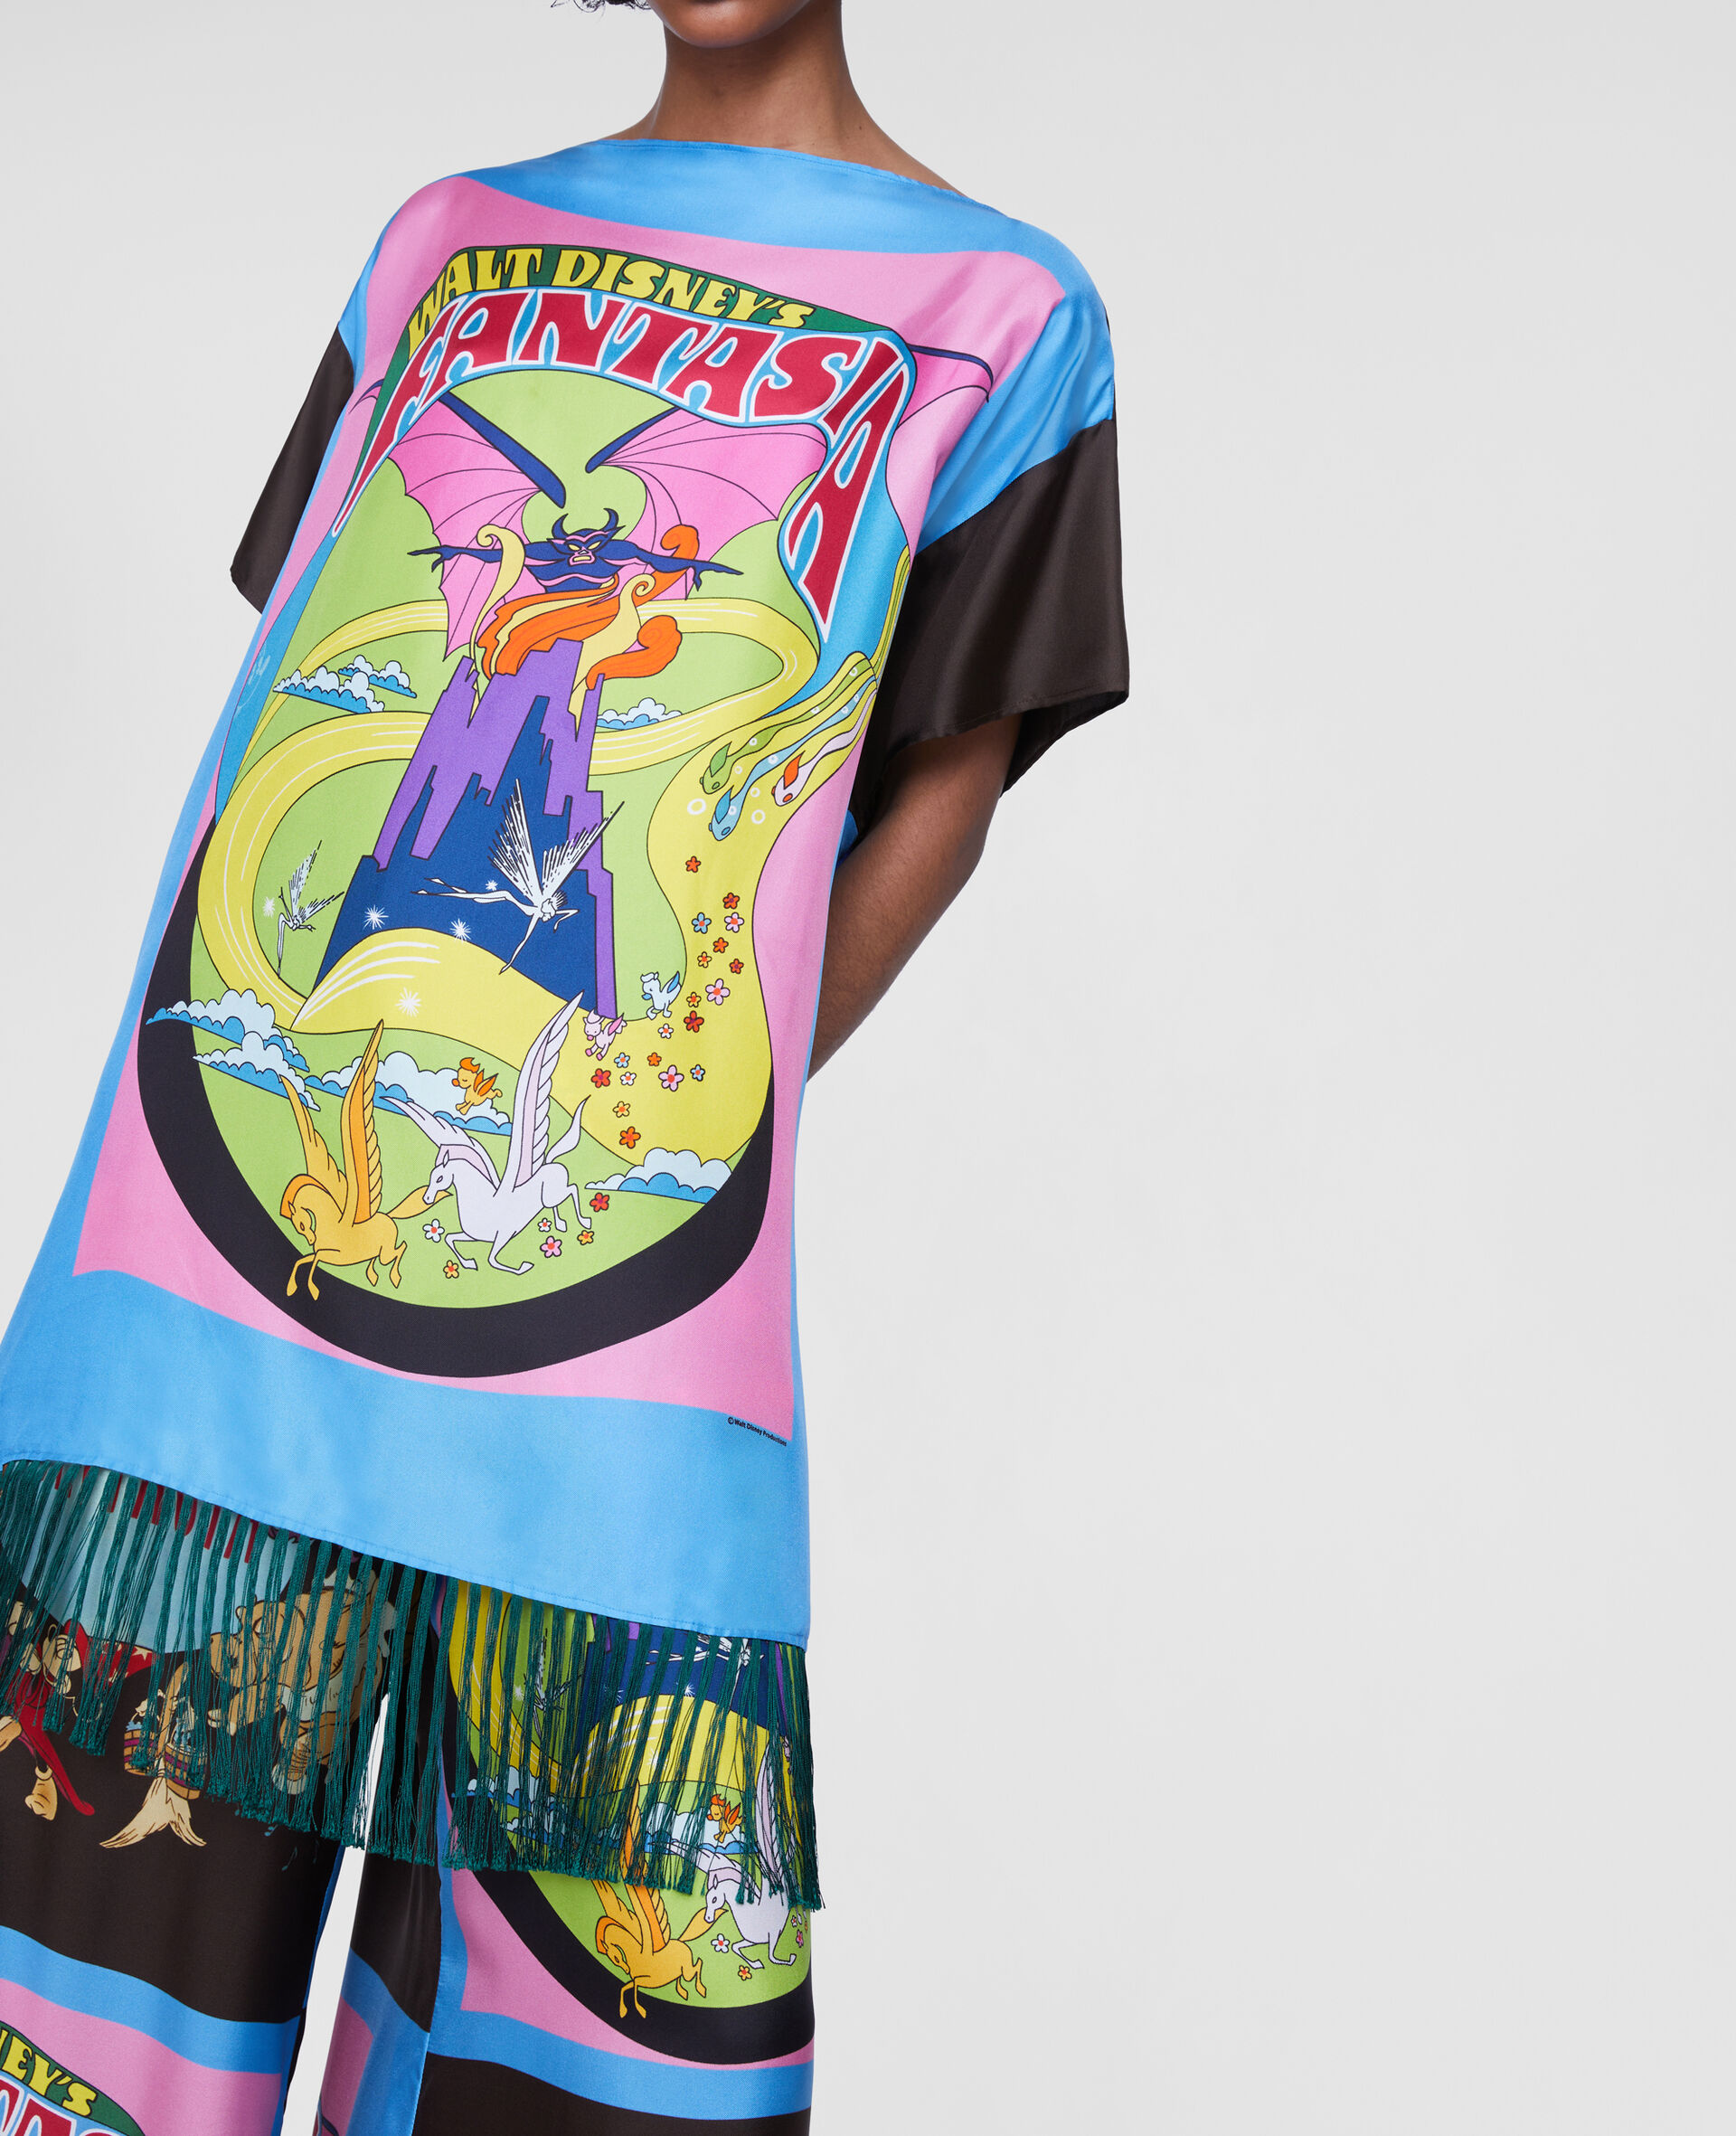 Robe t shirt en soie a franges imprimé Fantasia Poster-Fantaisie-large image number 2